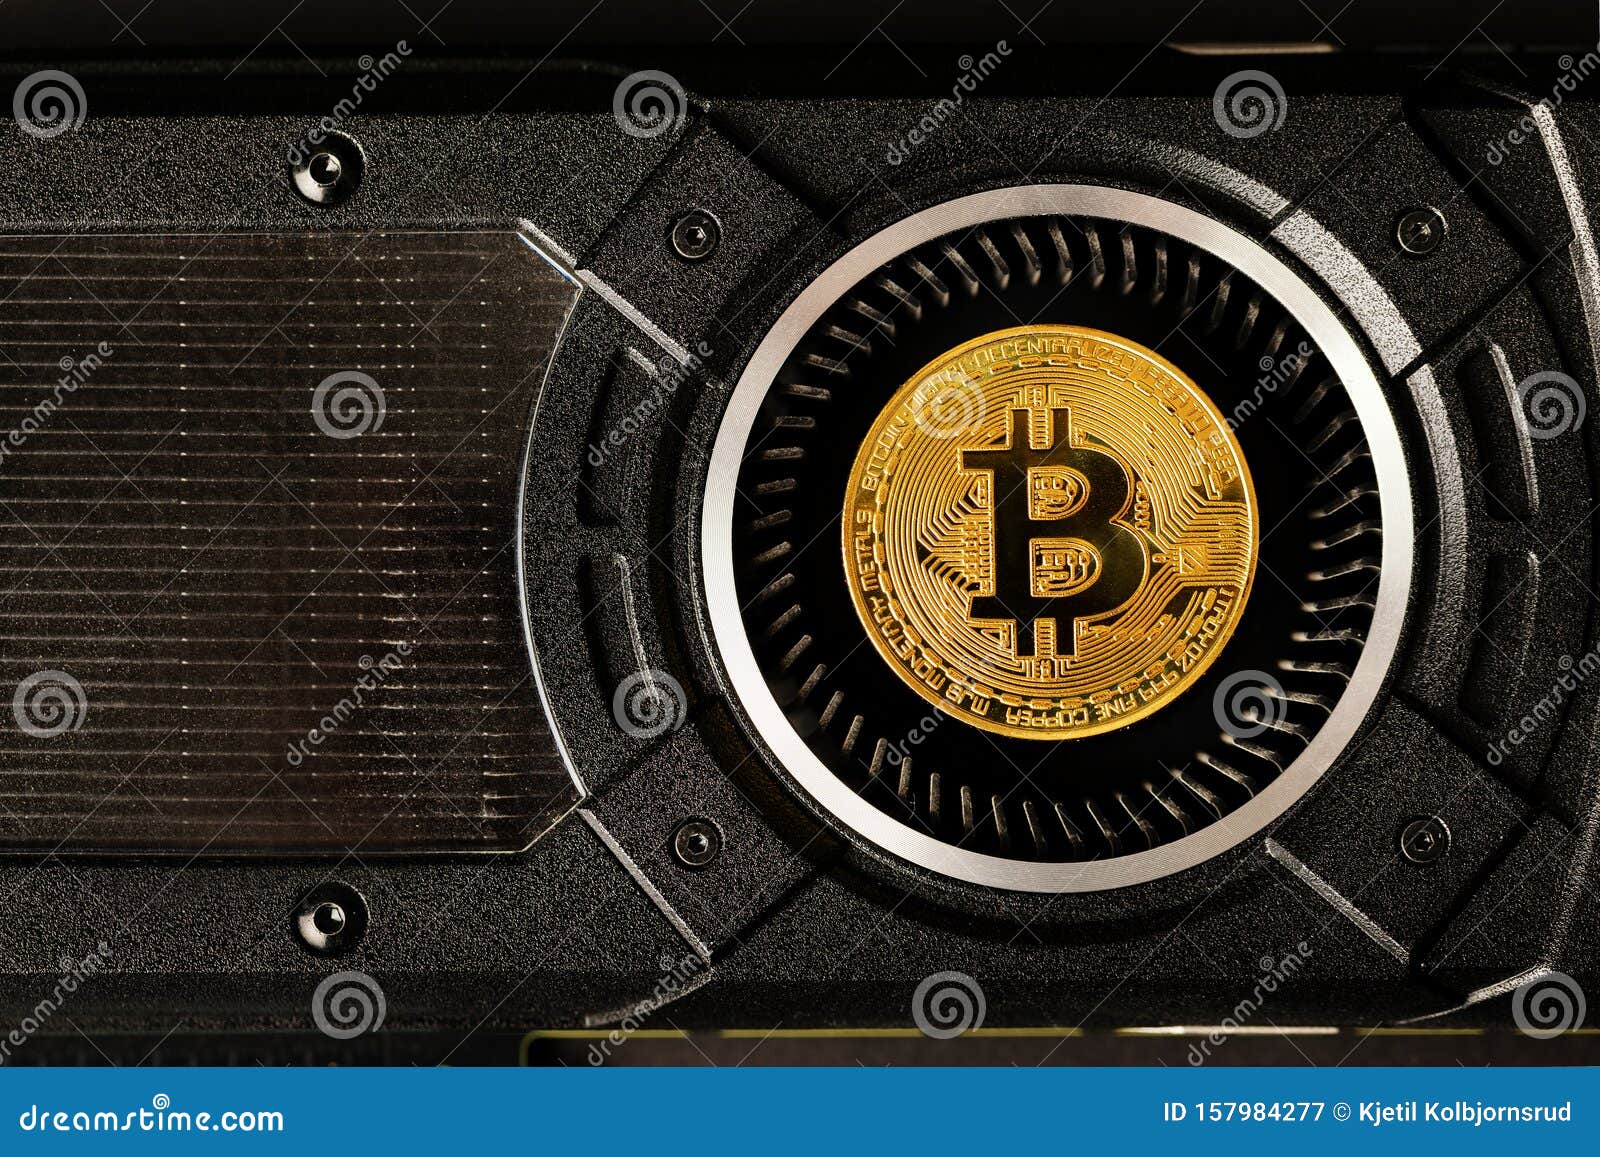 bitcoin gold mining hardware